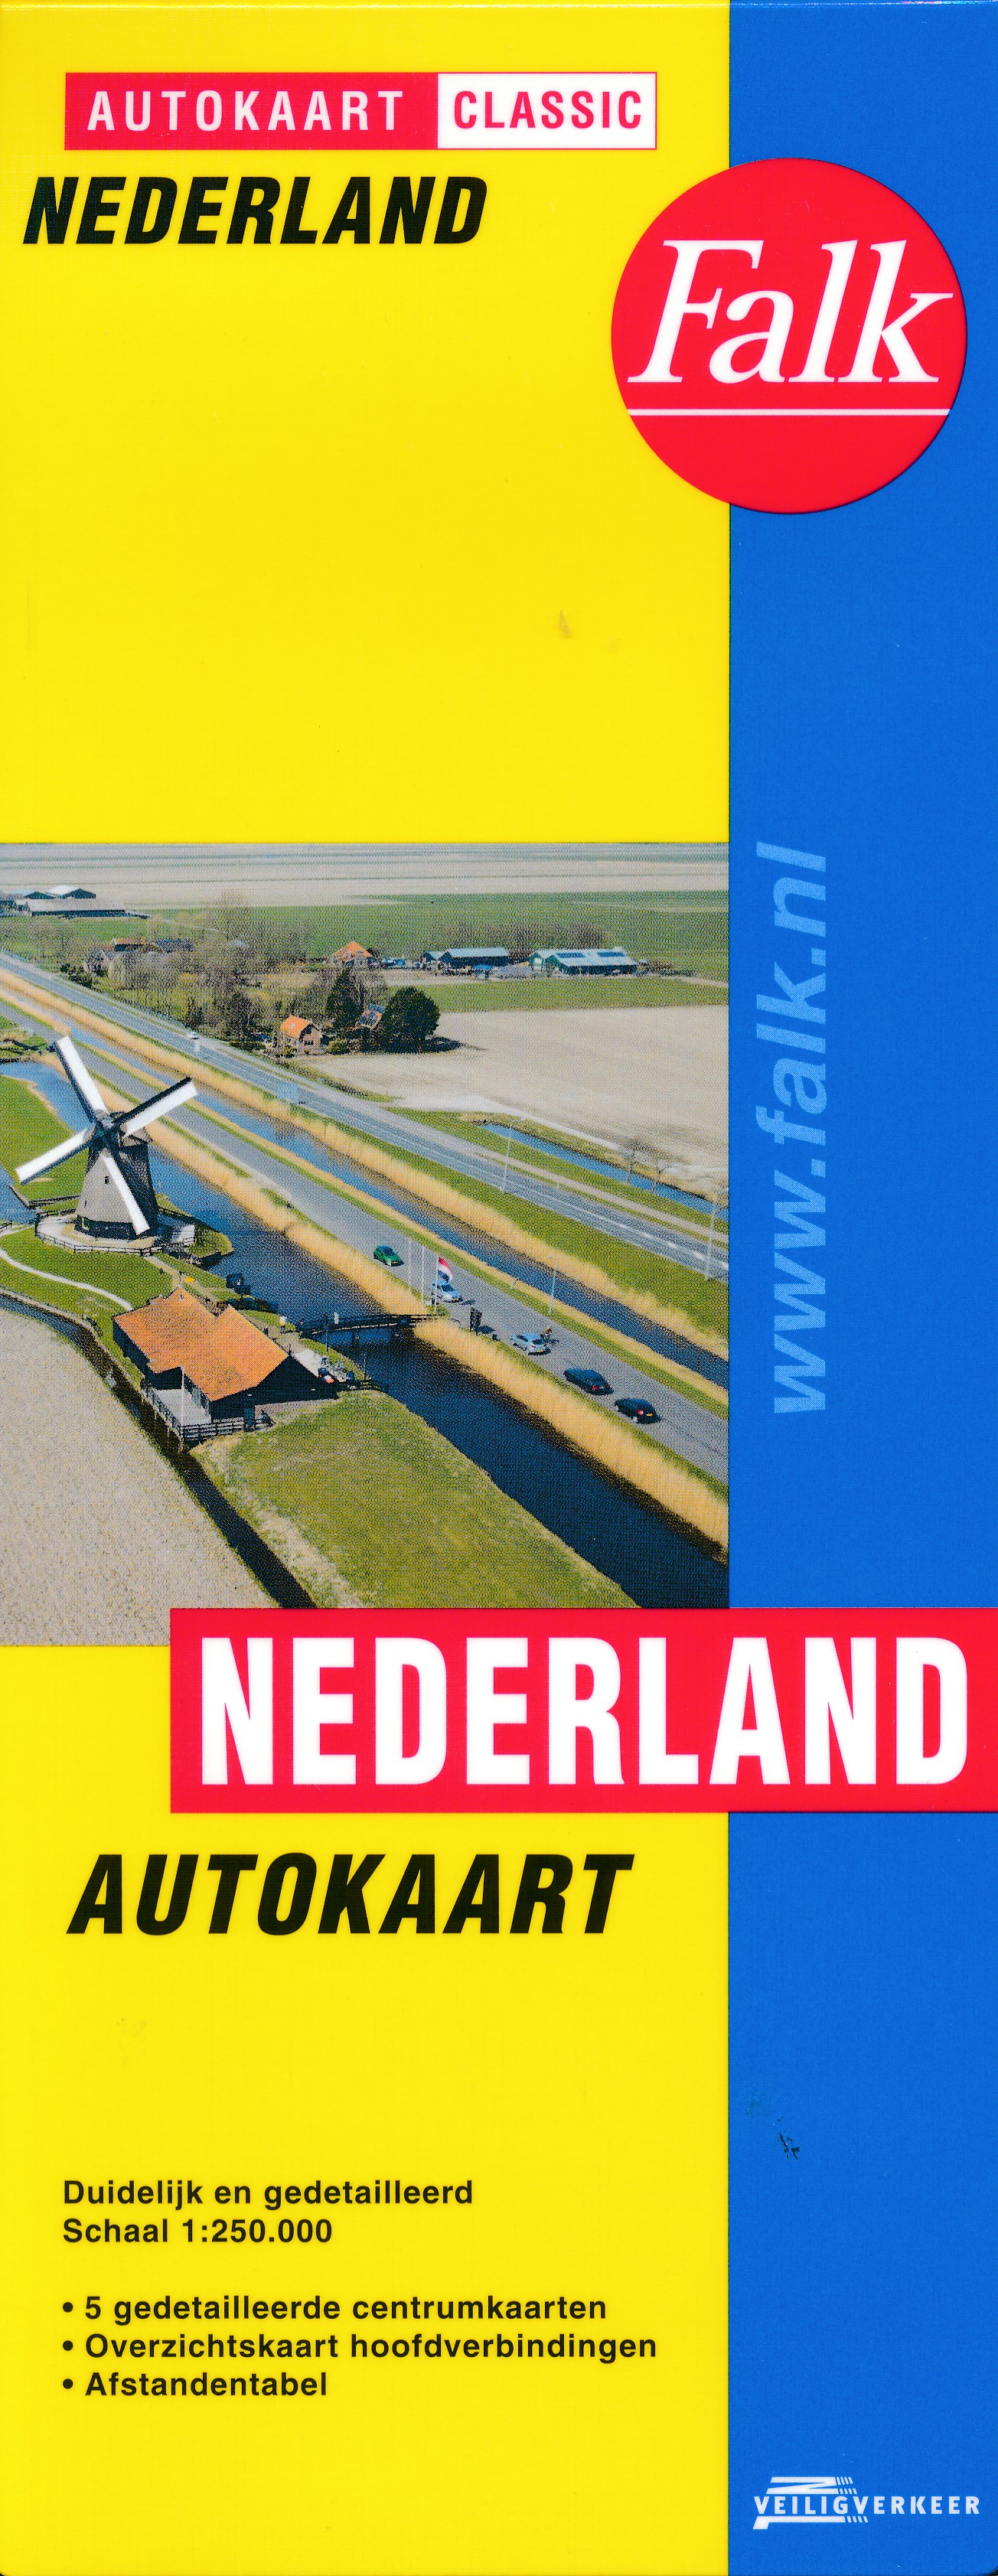 Online bestellen: Wegenkaart - landkaart Autokaart Classic Nederland | Falk